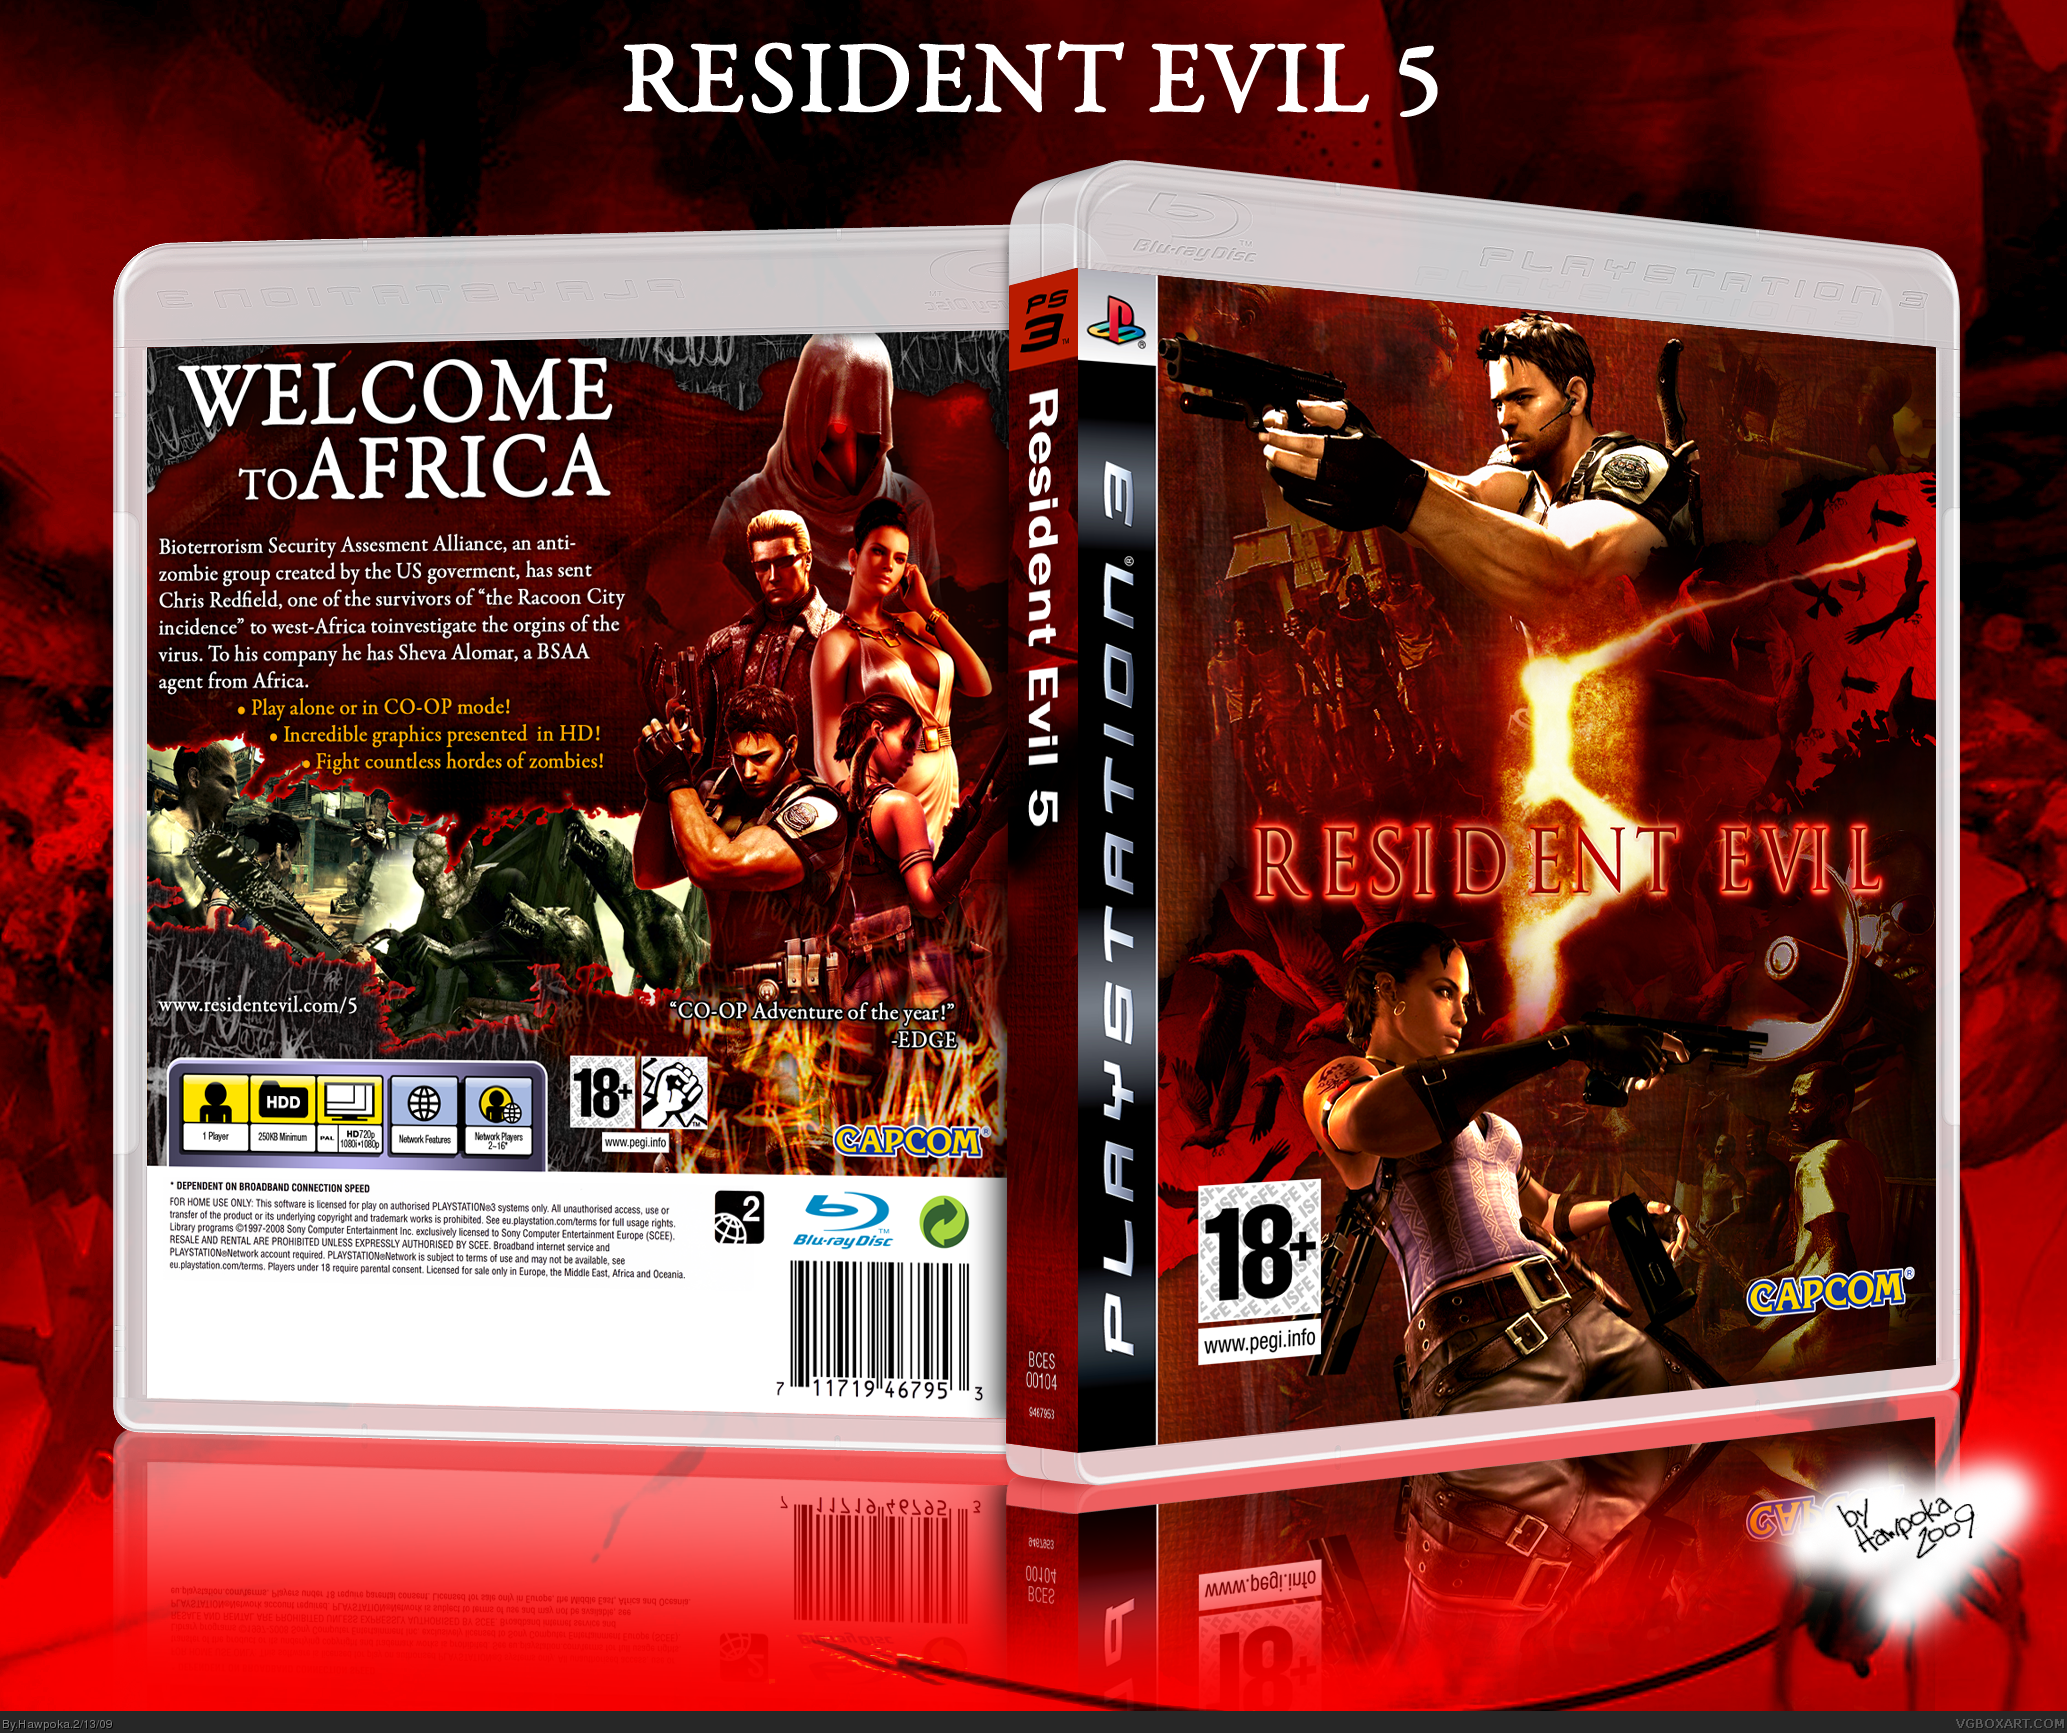 Resident evil 3 ps5. Resident Evil 5 ps4 диск. Диск Resident Evil 3 ps5. Resident Evil 5 ps3 обложка. Resident Evil 4 ps3 диск.